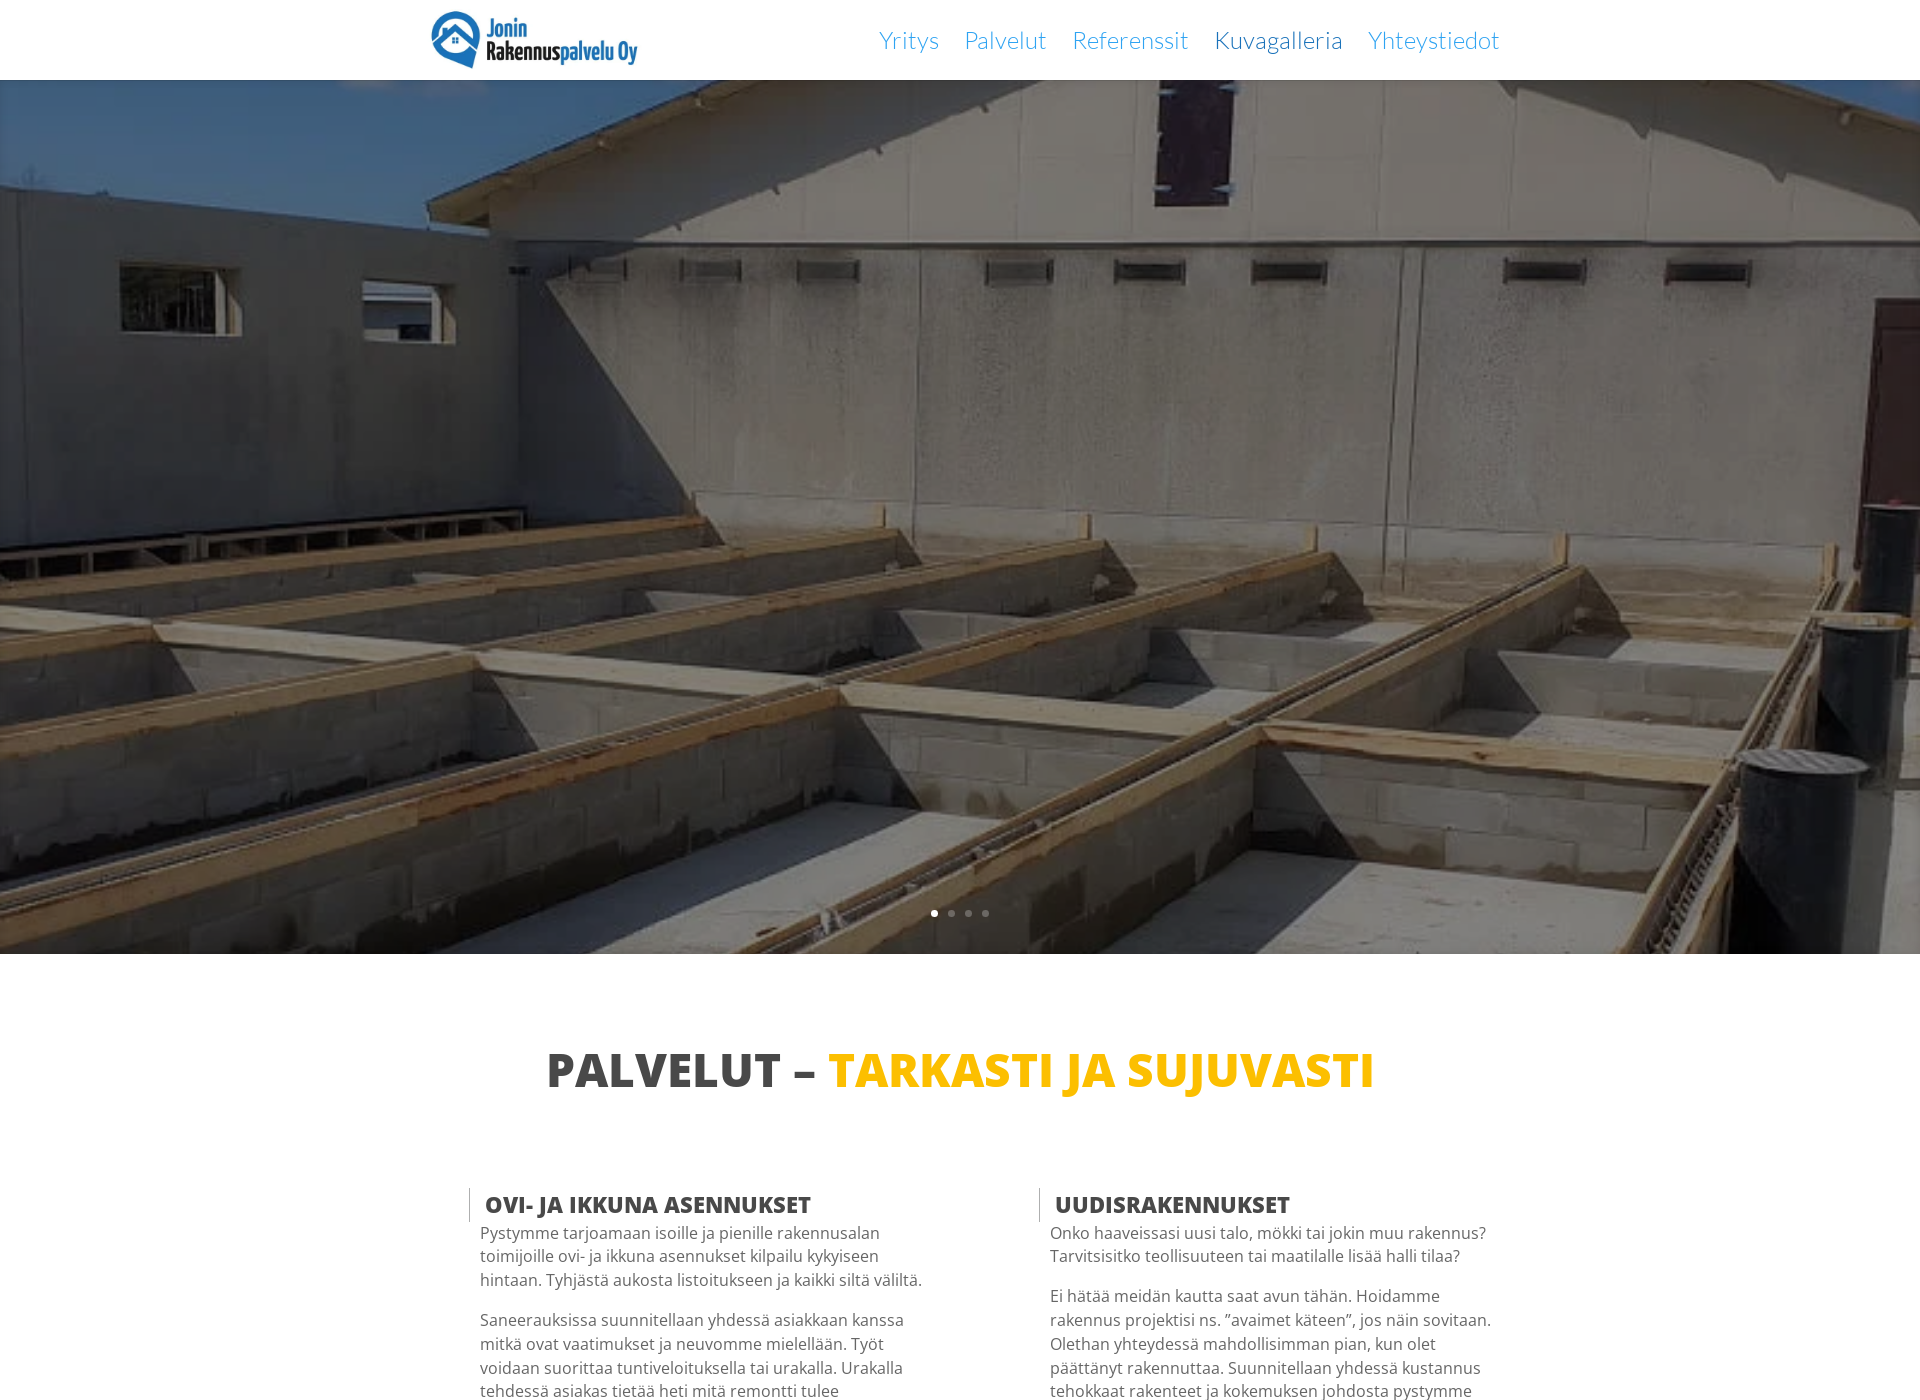 Skärmdump för joninrakennus.fi